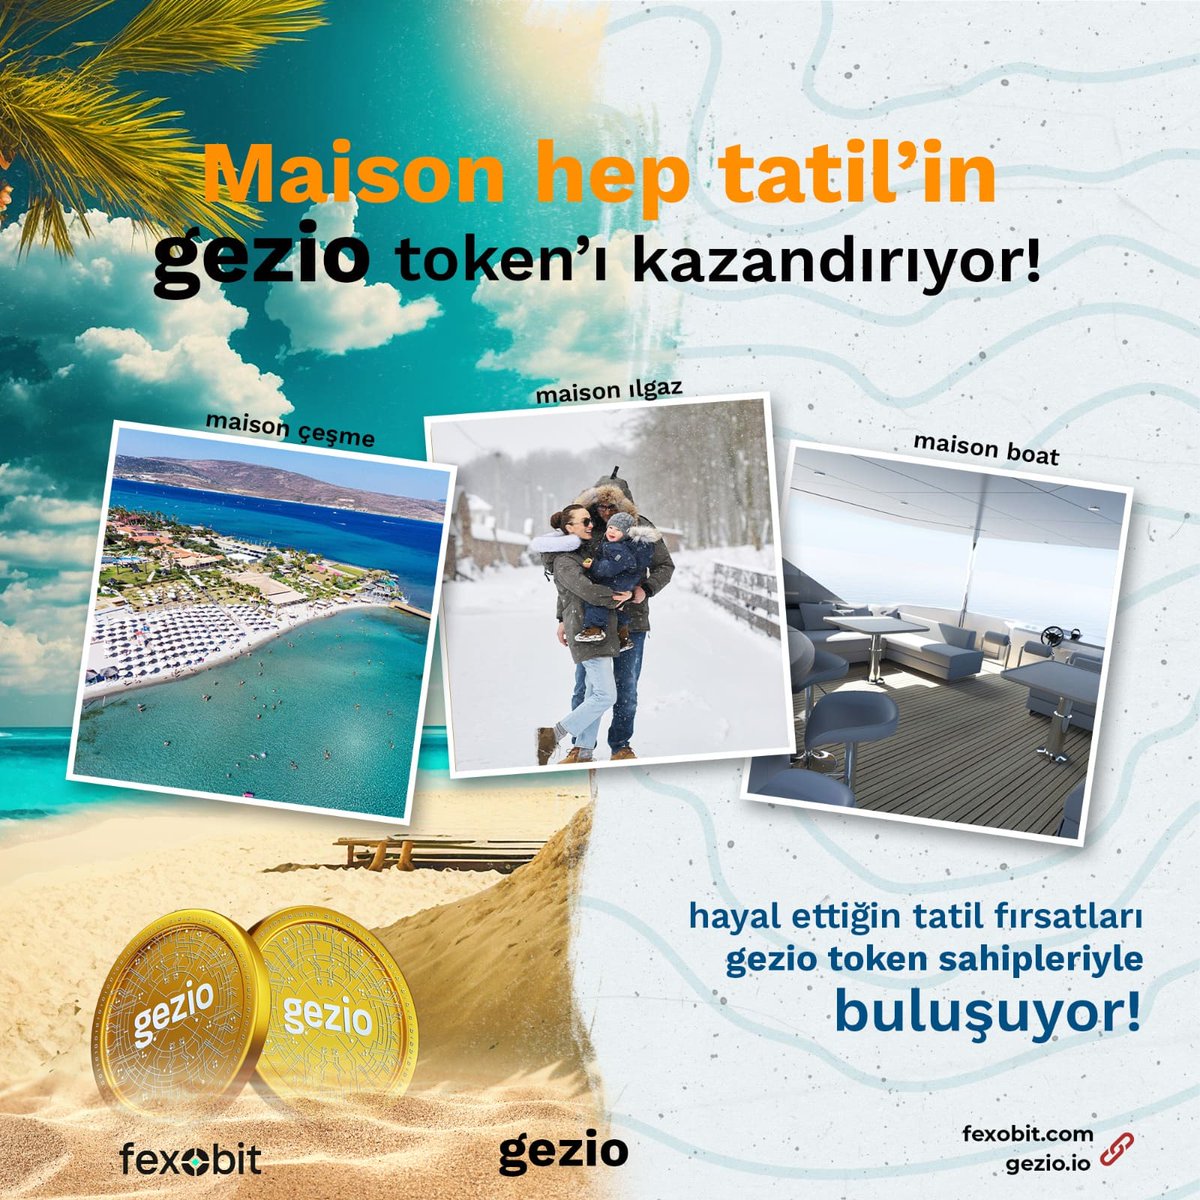 Maison hep tatil'in gezio token'ı kazandırıyor! Detaylar için bizi takip edin!🤩 #cyrpto #coin #gezio #fexobit